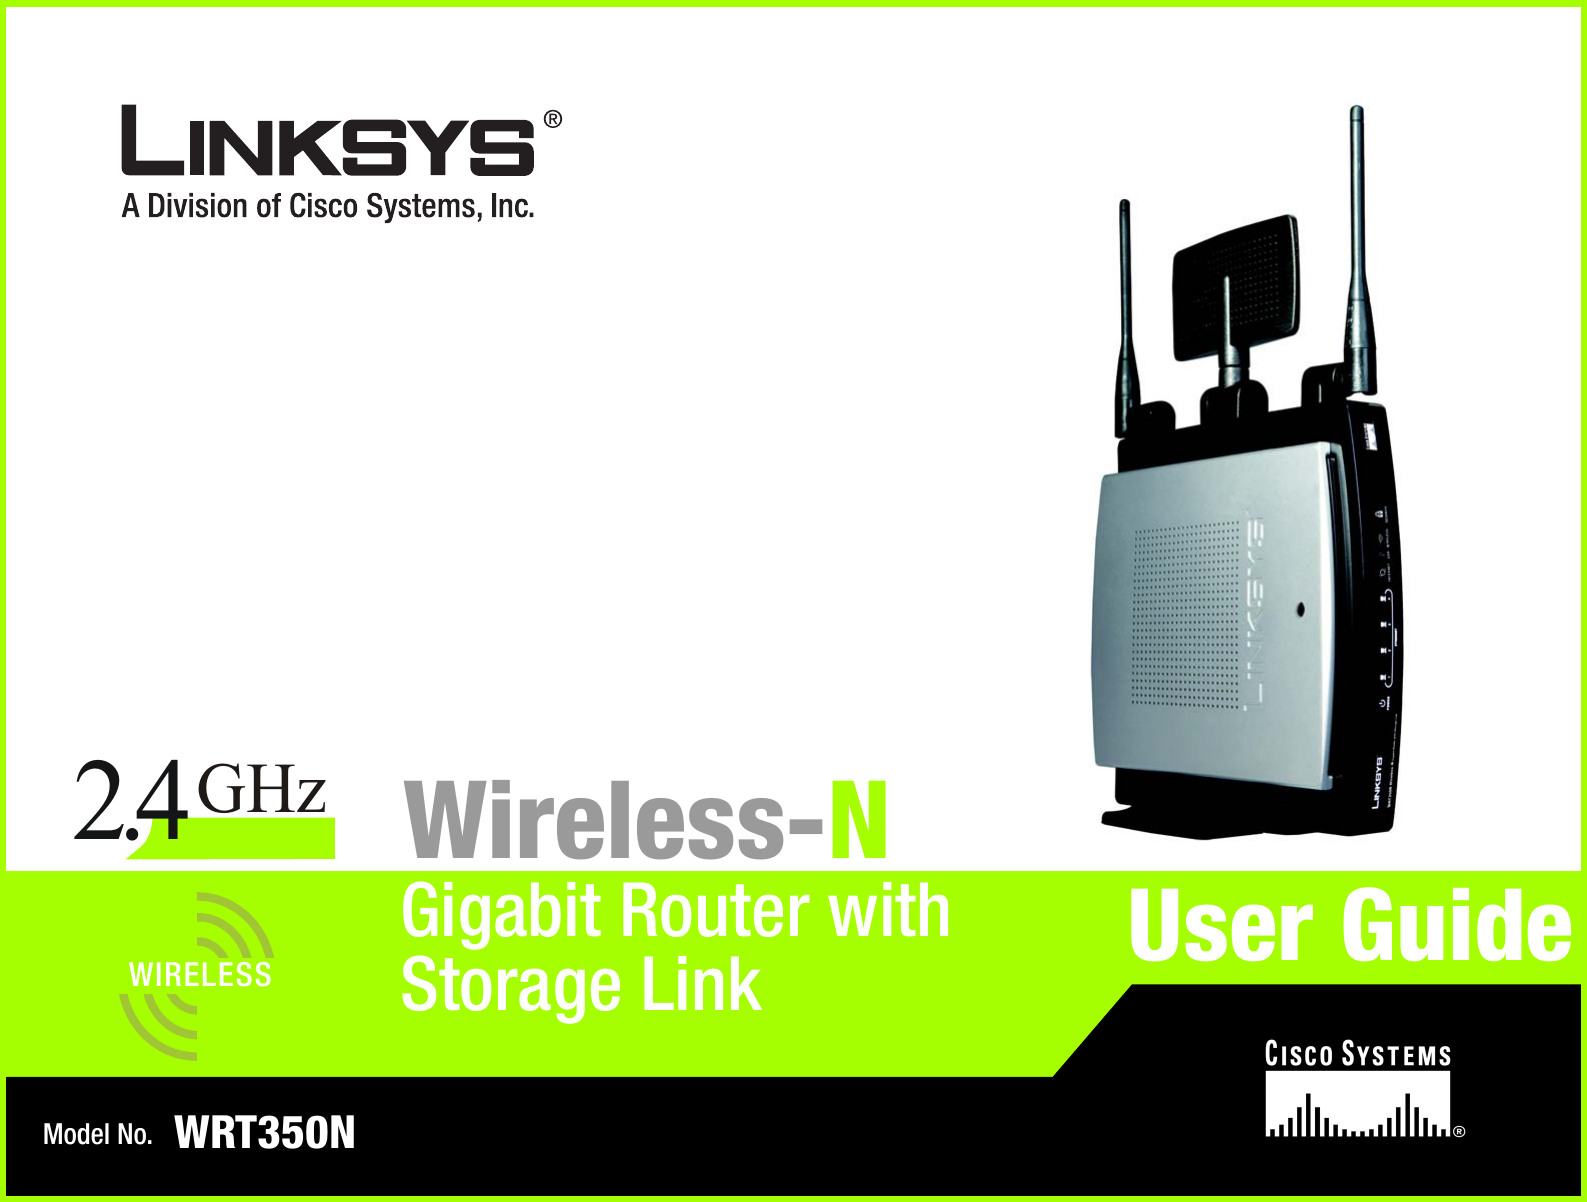 Model No.Gigabit Router withWireless-NWRT350NUser GuideWIRELESSGHz2.4Storage Link